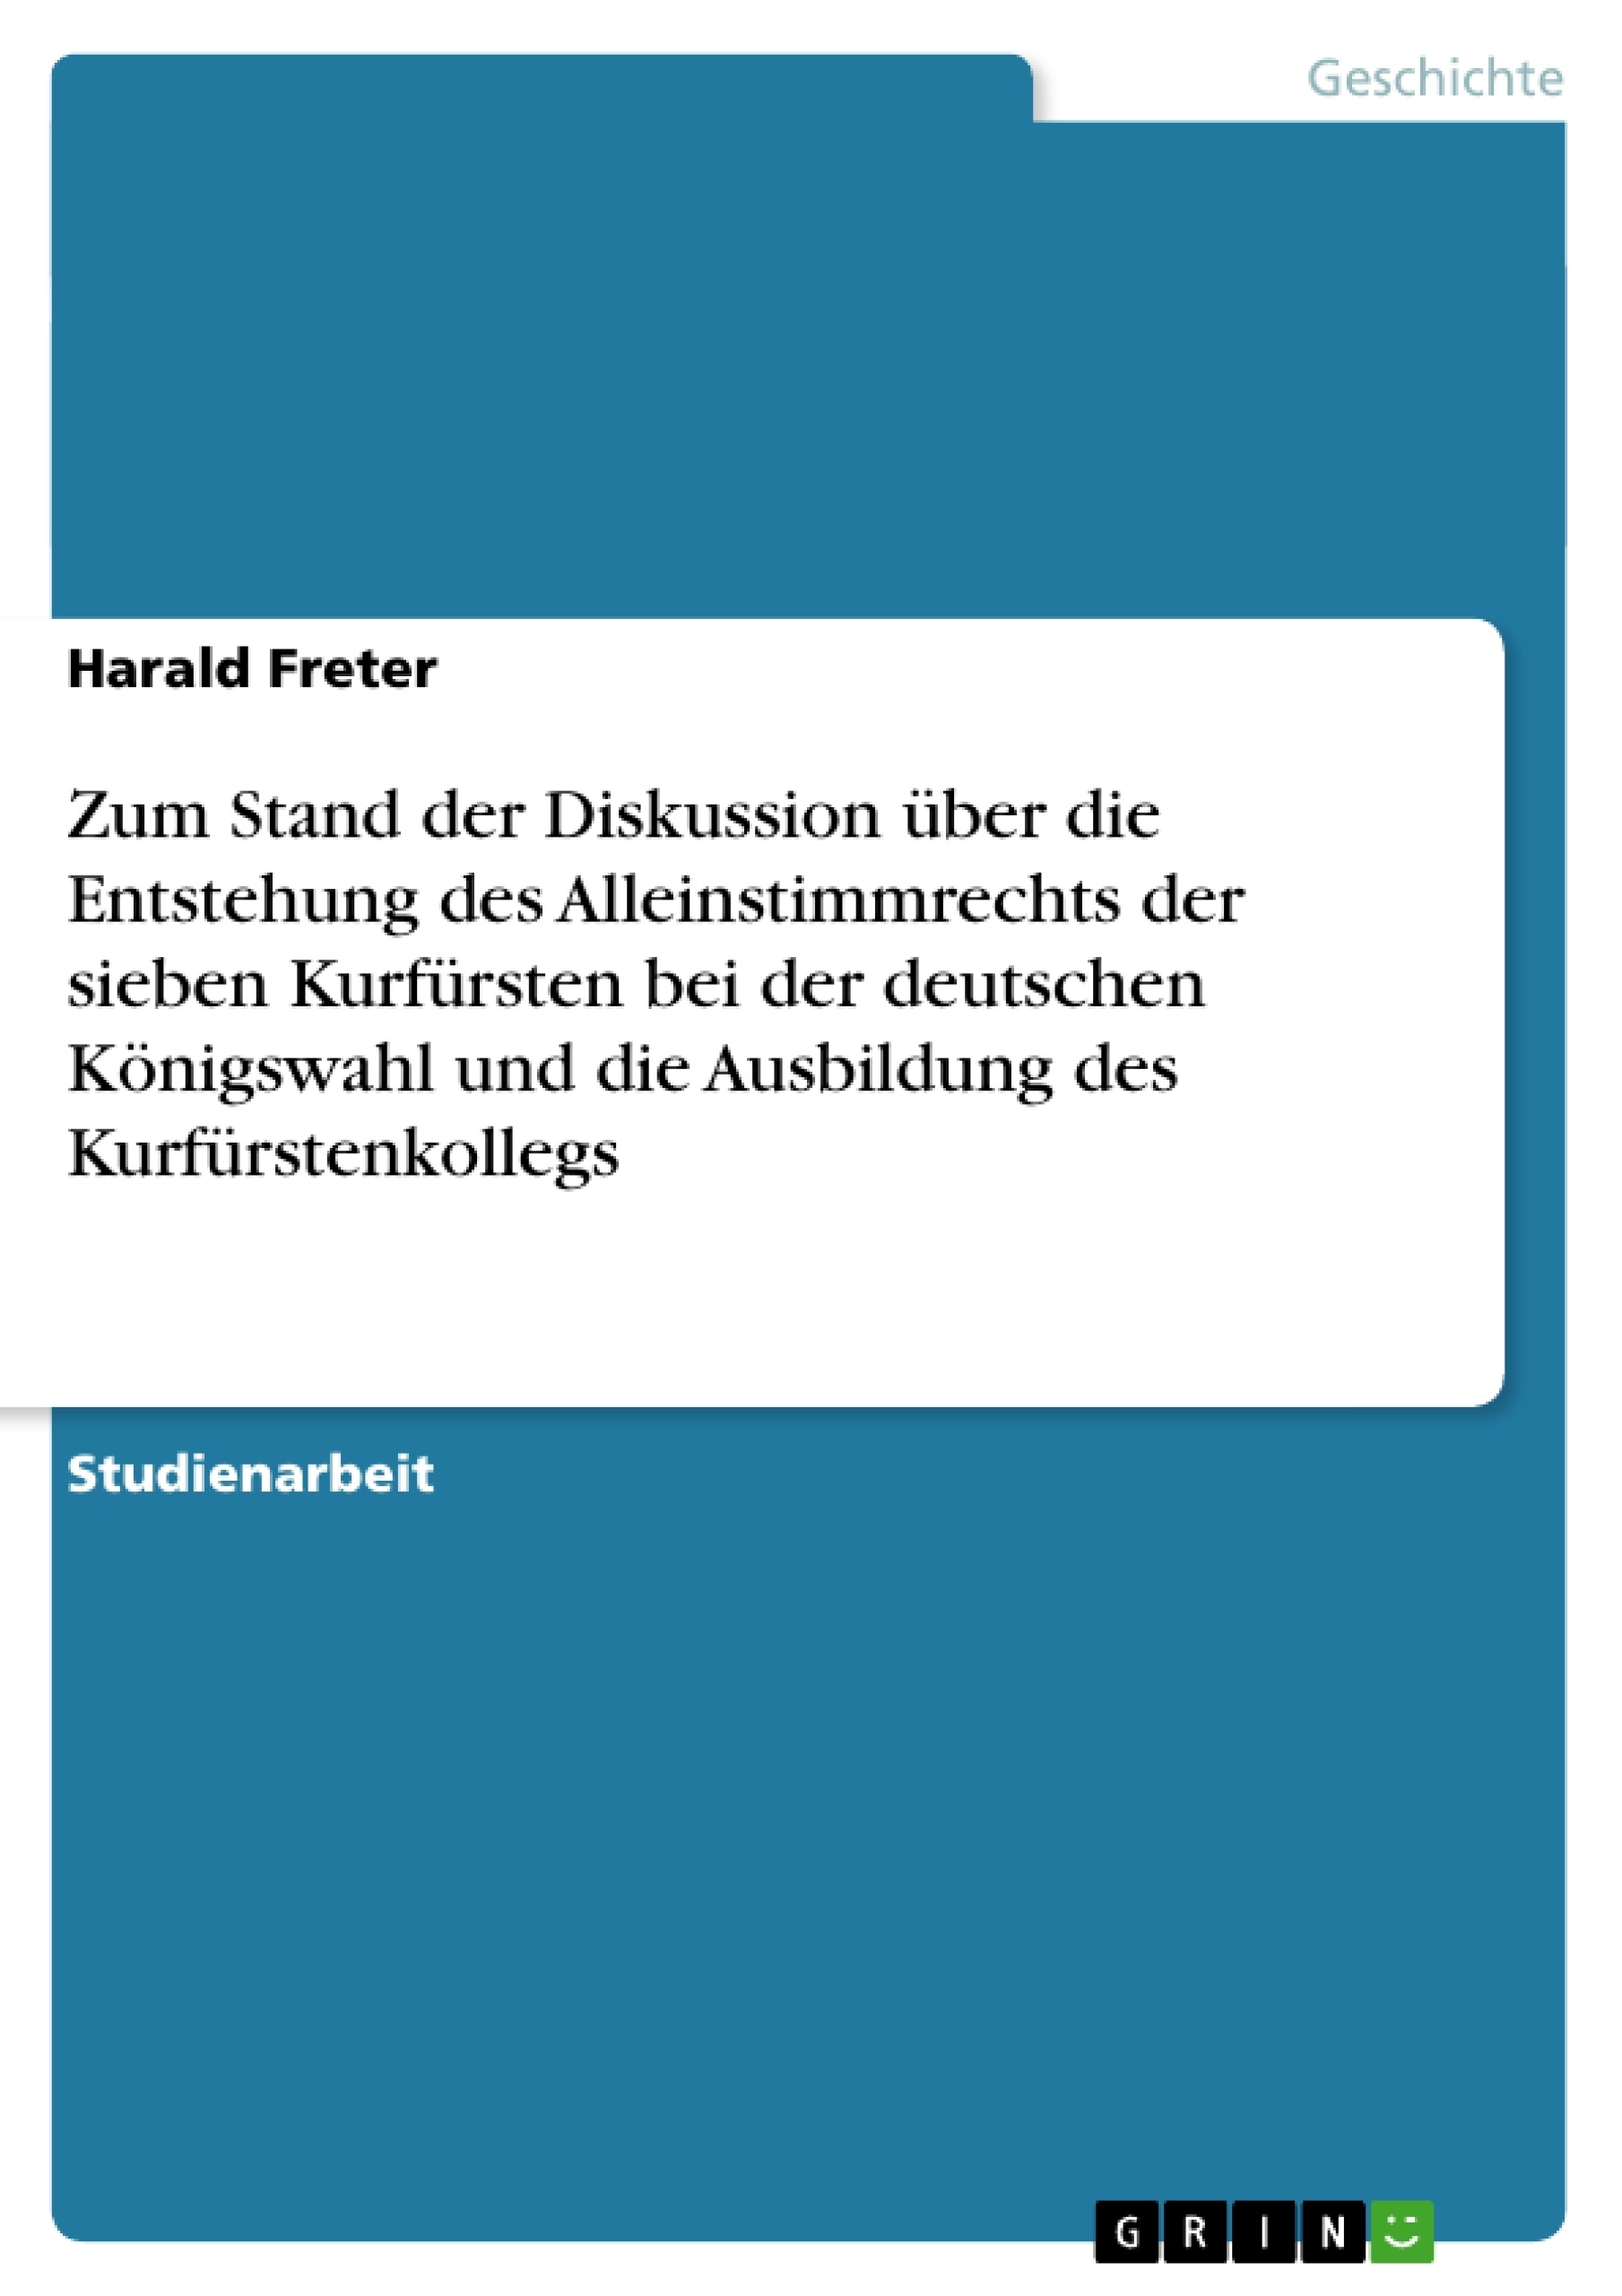 Título: Zum Stand der Diskussion über die Entstehung des Alleinstimmrechts der sieben Kurfürsten bei der deutschen Königswahl und die Ausbildung des Kurfürstenkollegs